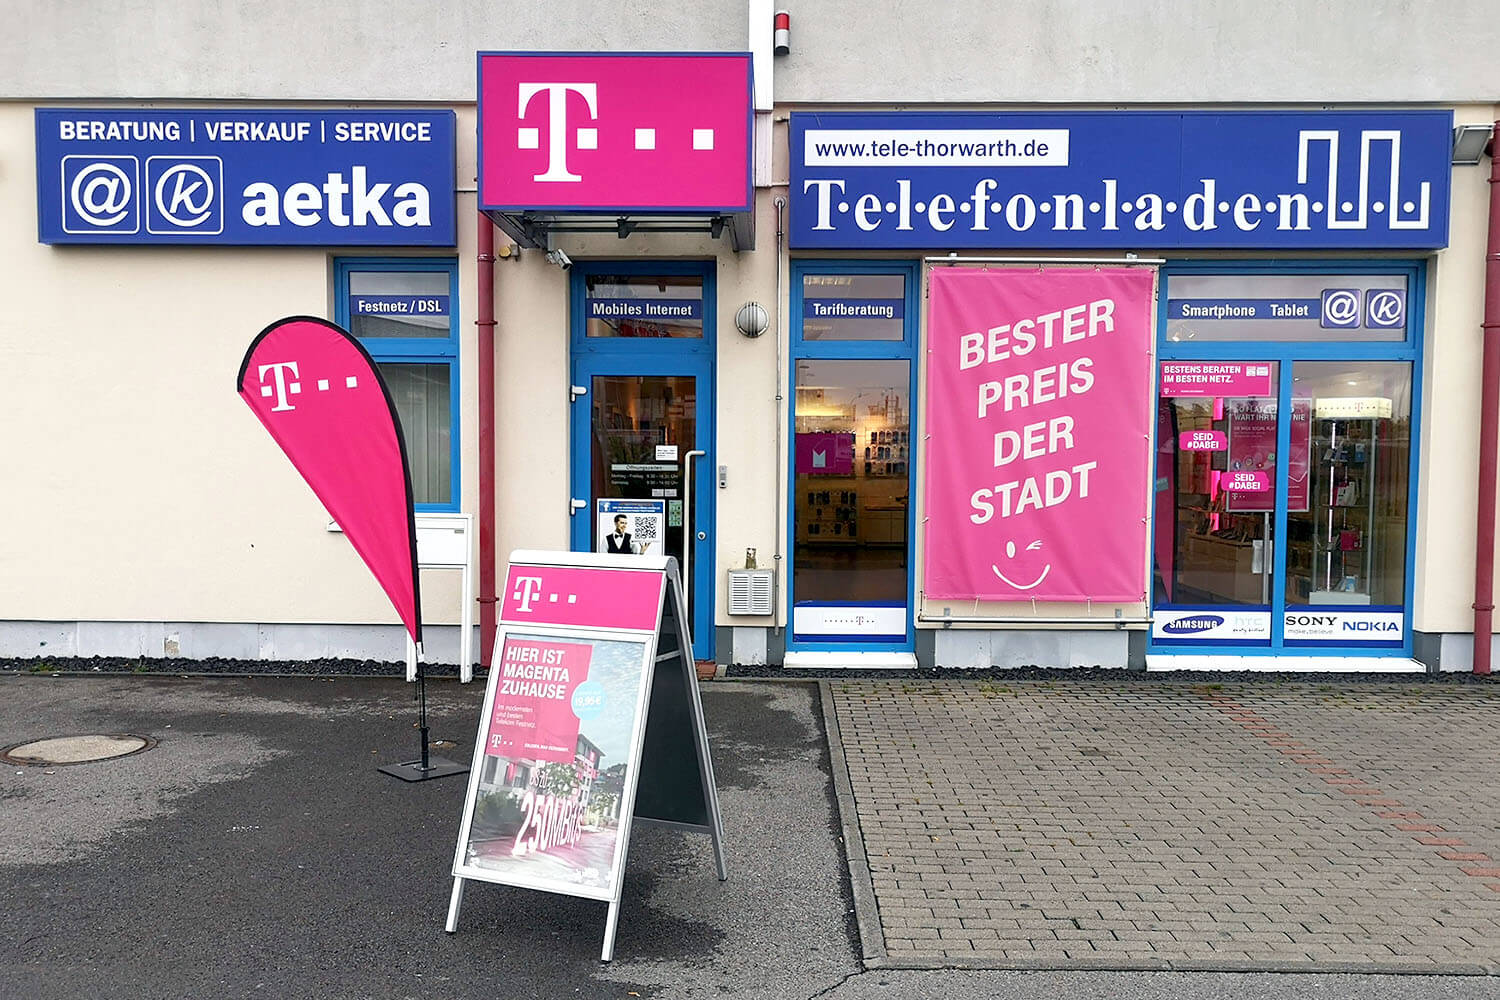 Telefonladen Bad Neustadt, Alter Molkereiweg 14-18